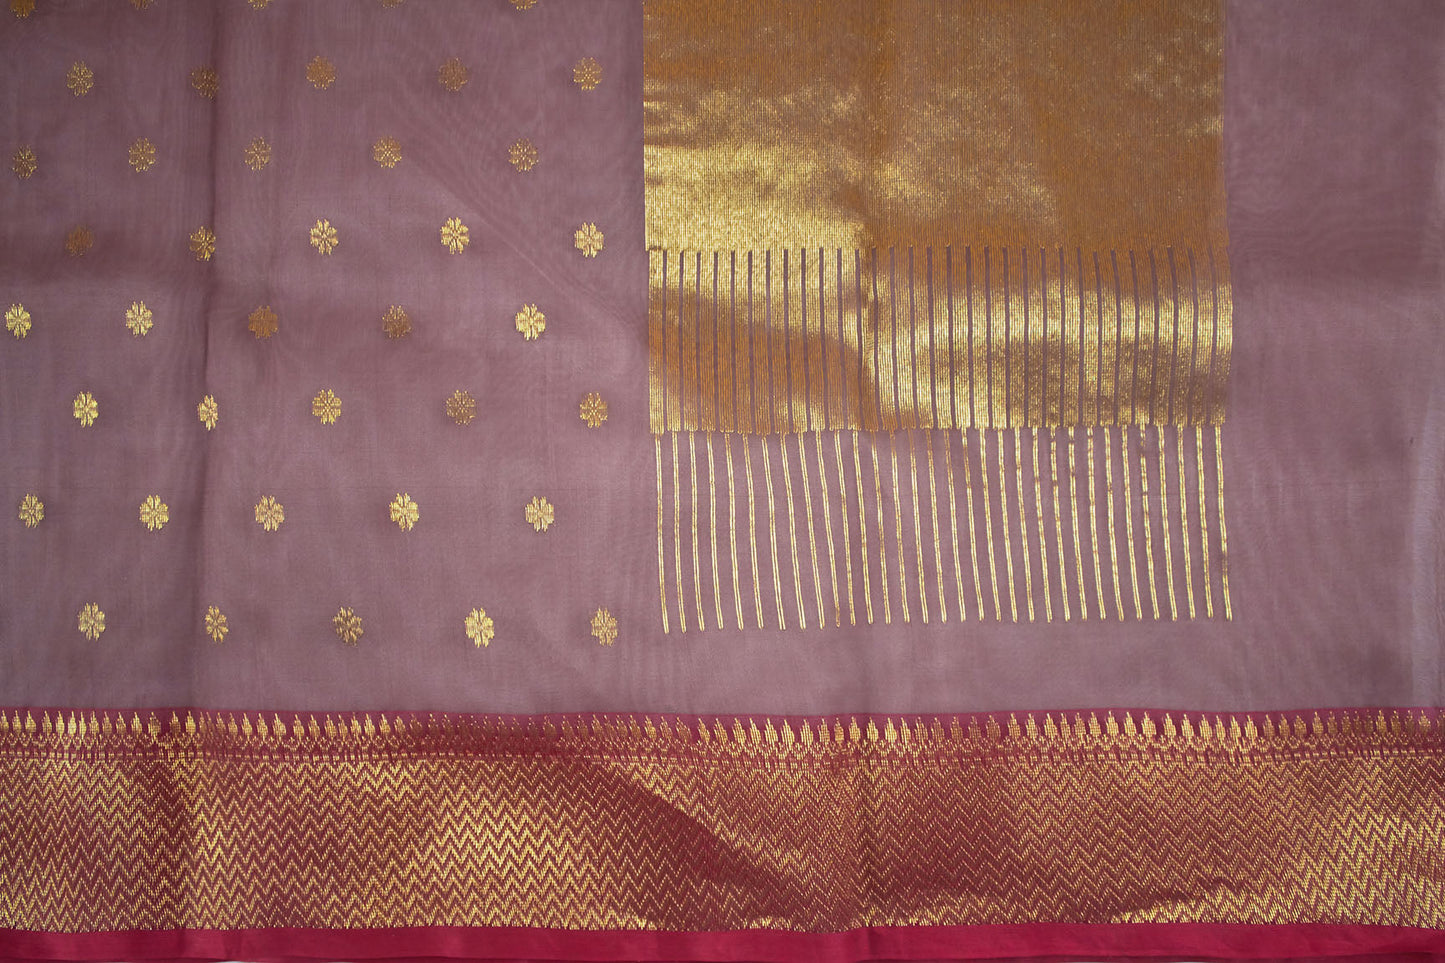 Wine Taupe Chanderi Handloom Sari